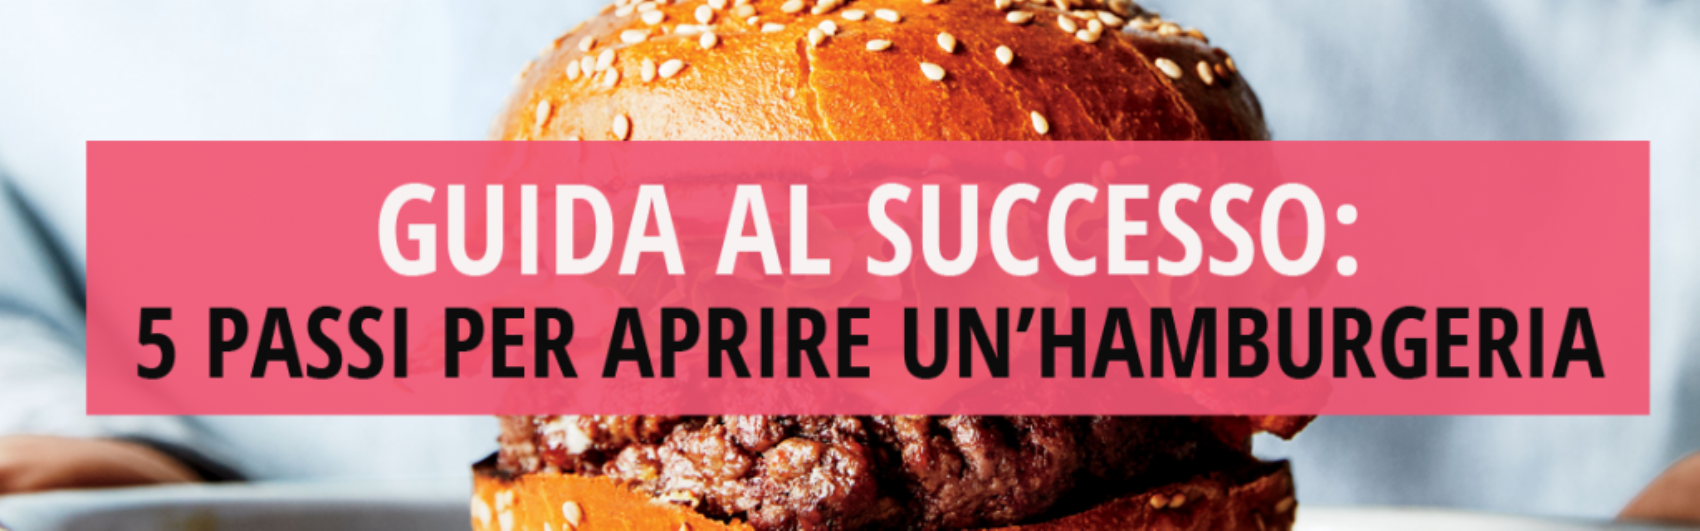 Guida al successo: 5 passi per aprire un’hamburgeria